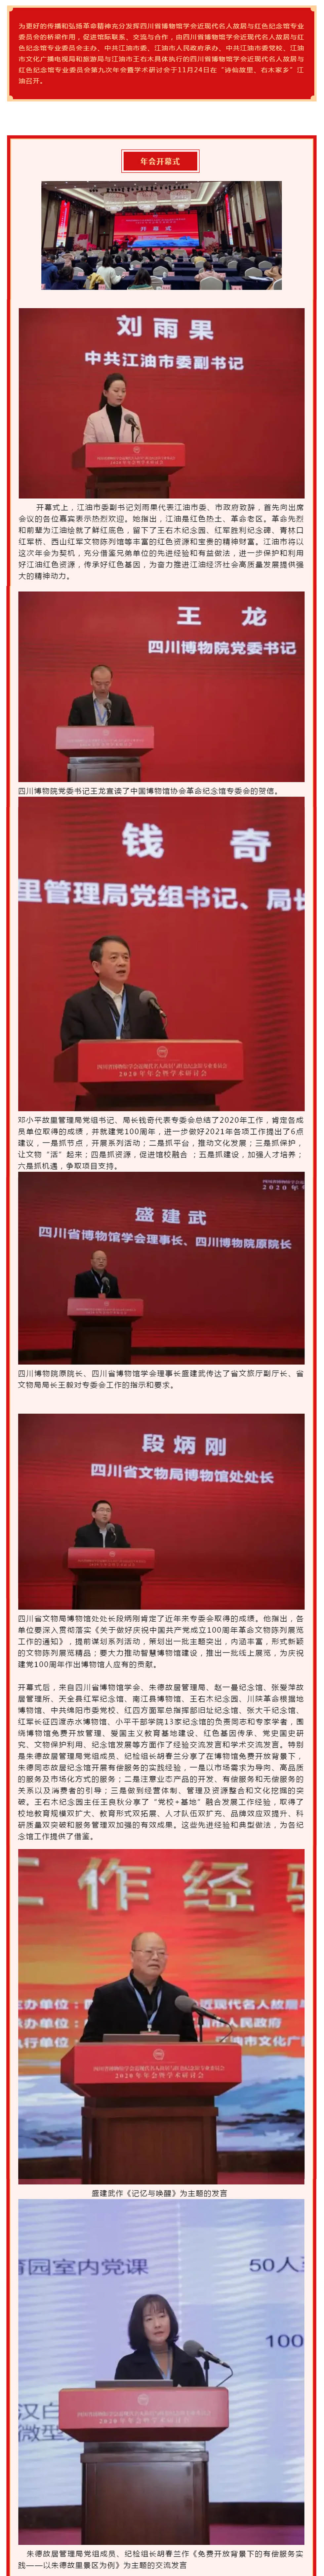 《大江长子铁血卫士》诗歌表演亮相2020年四川省博物馆学会近现代名人故居与红色纪念馆专业委员会年会